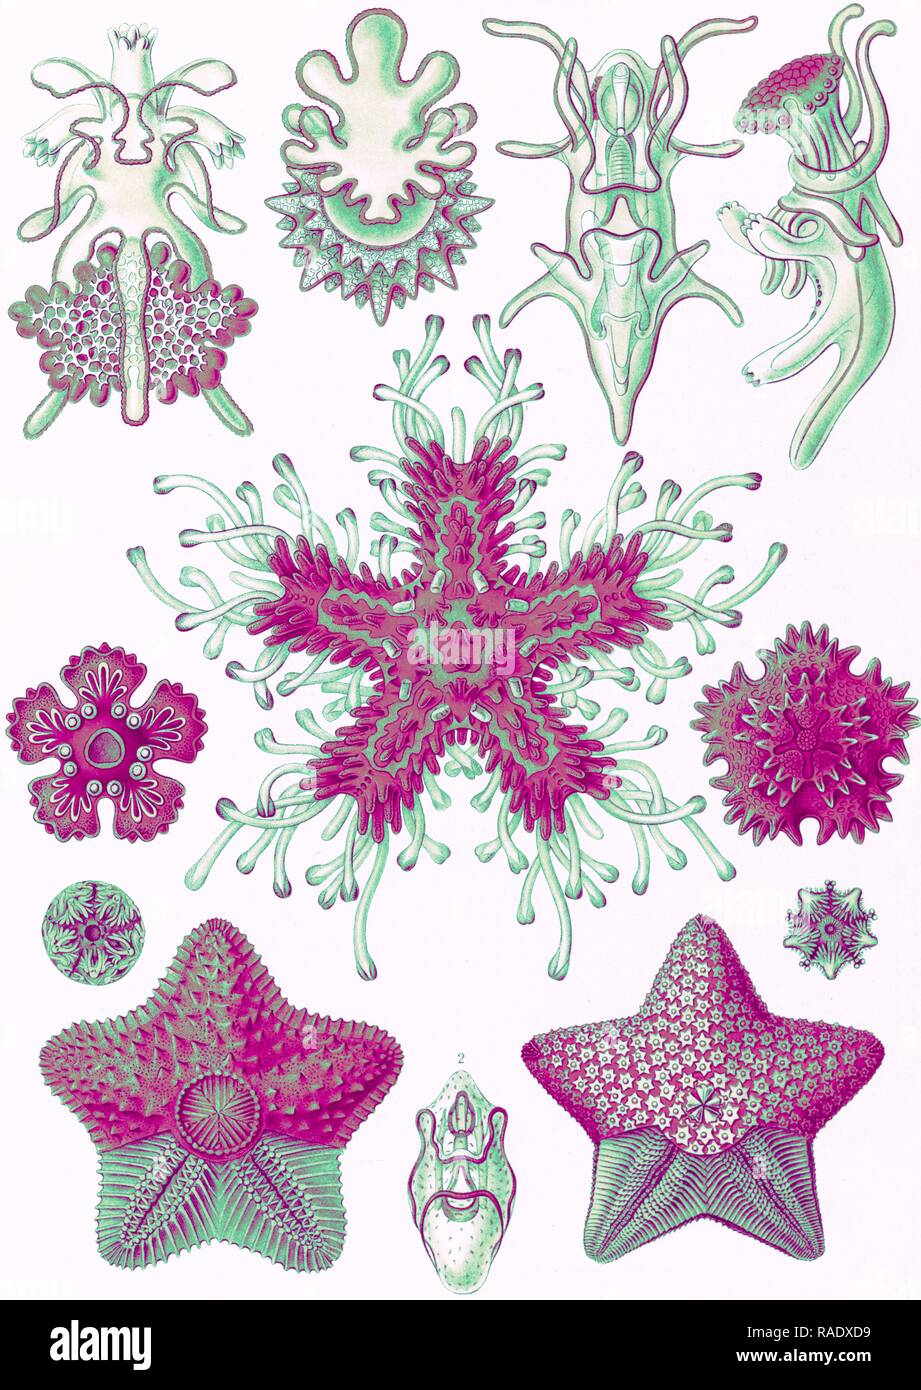 L'illustration montre les étoiles dans le phyllum des échinodermes. Asteridea. - Seesterne, 1 : impression lithographie couleur repensé Banque D'Images